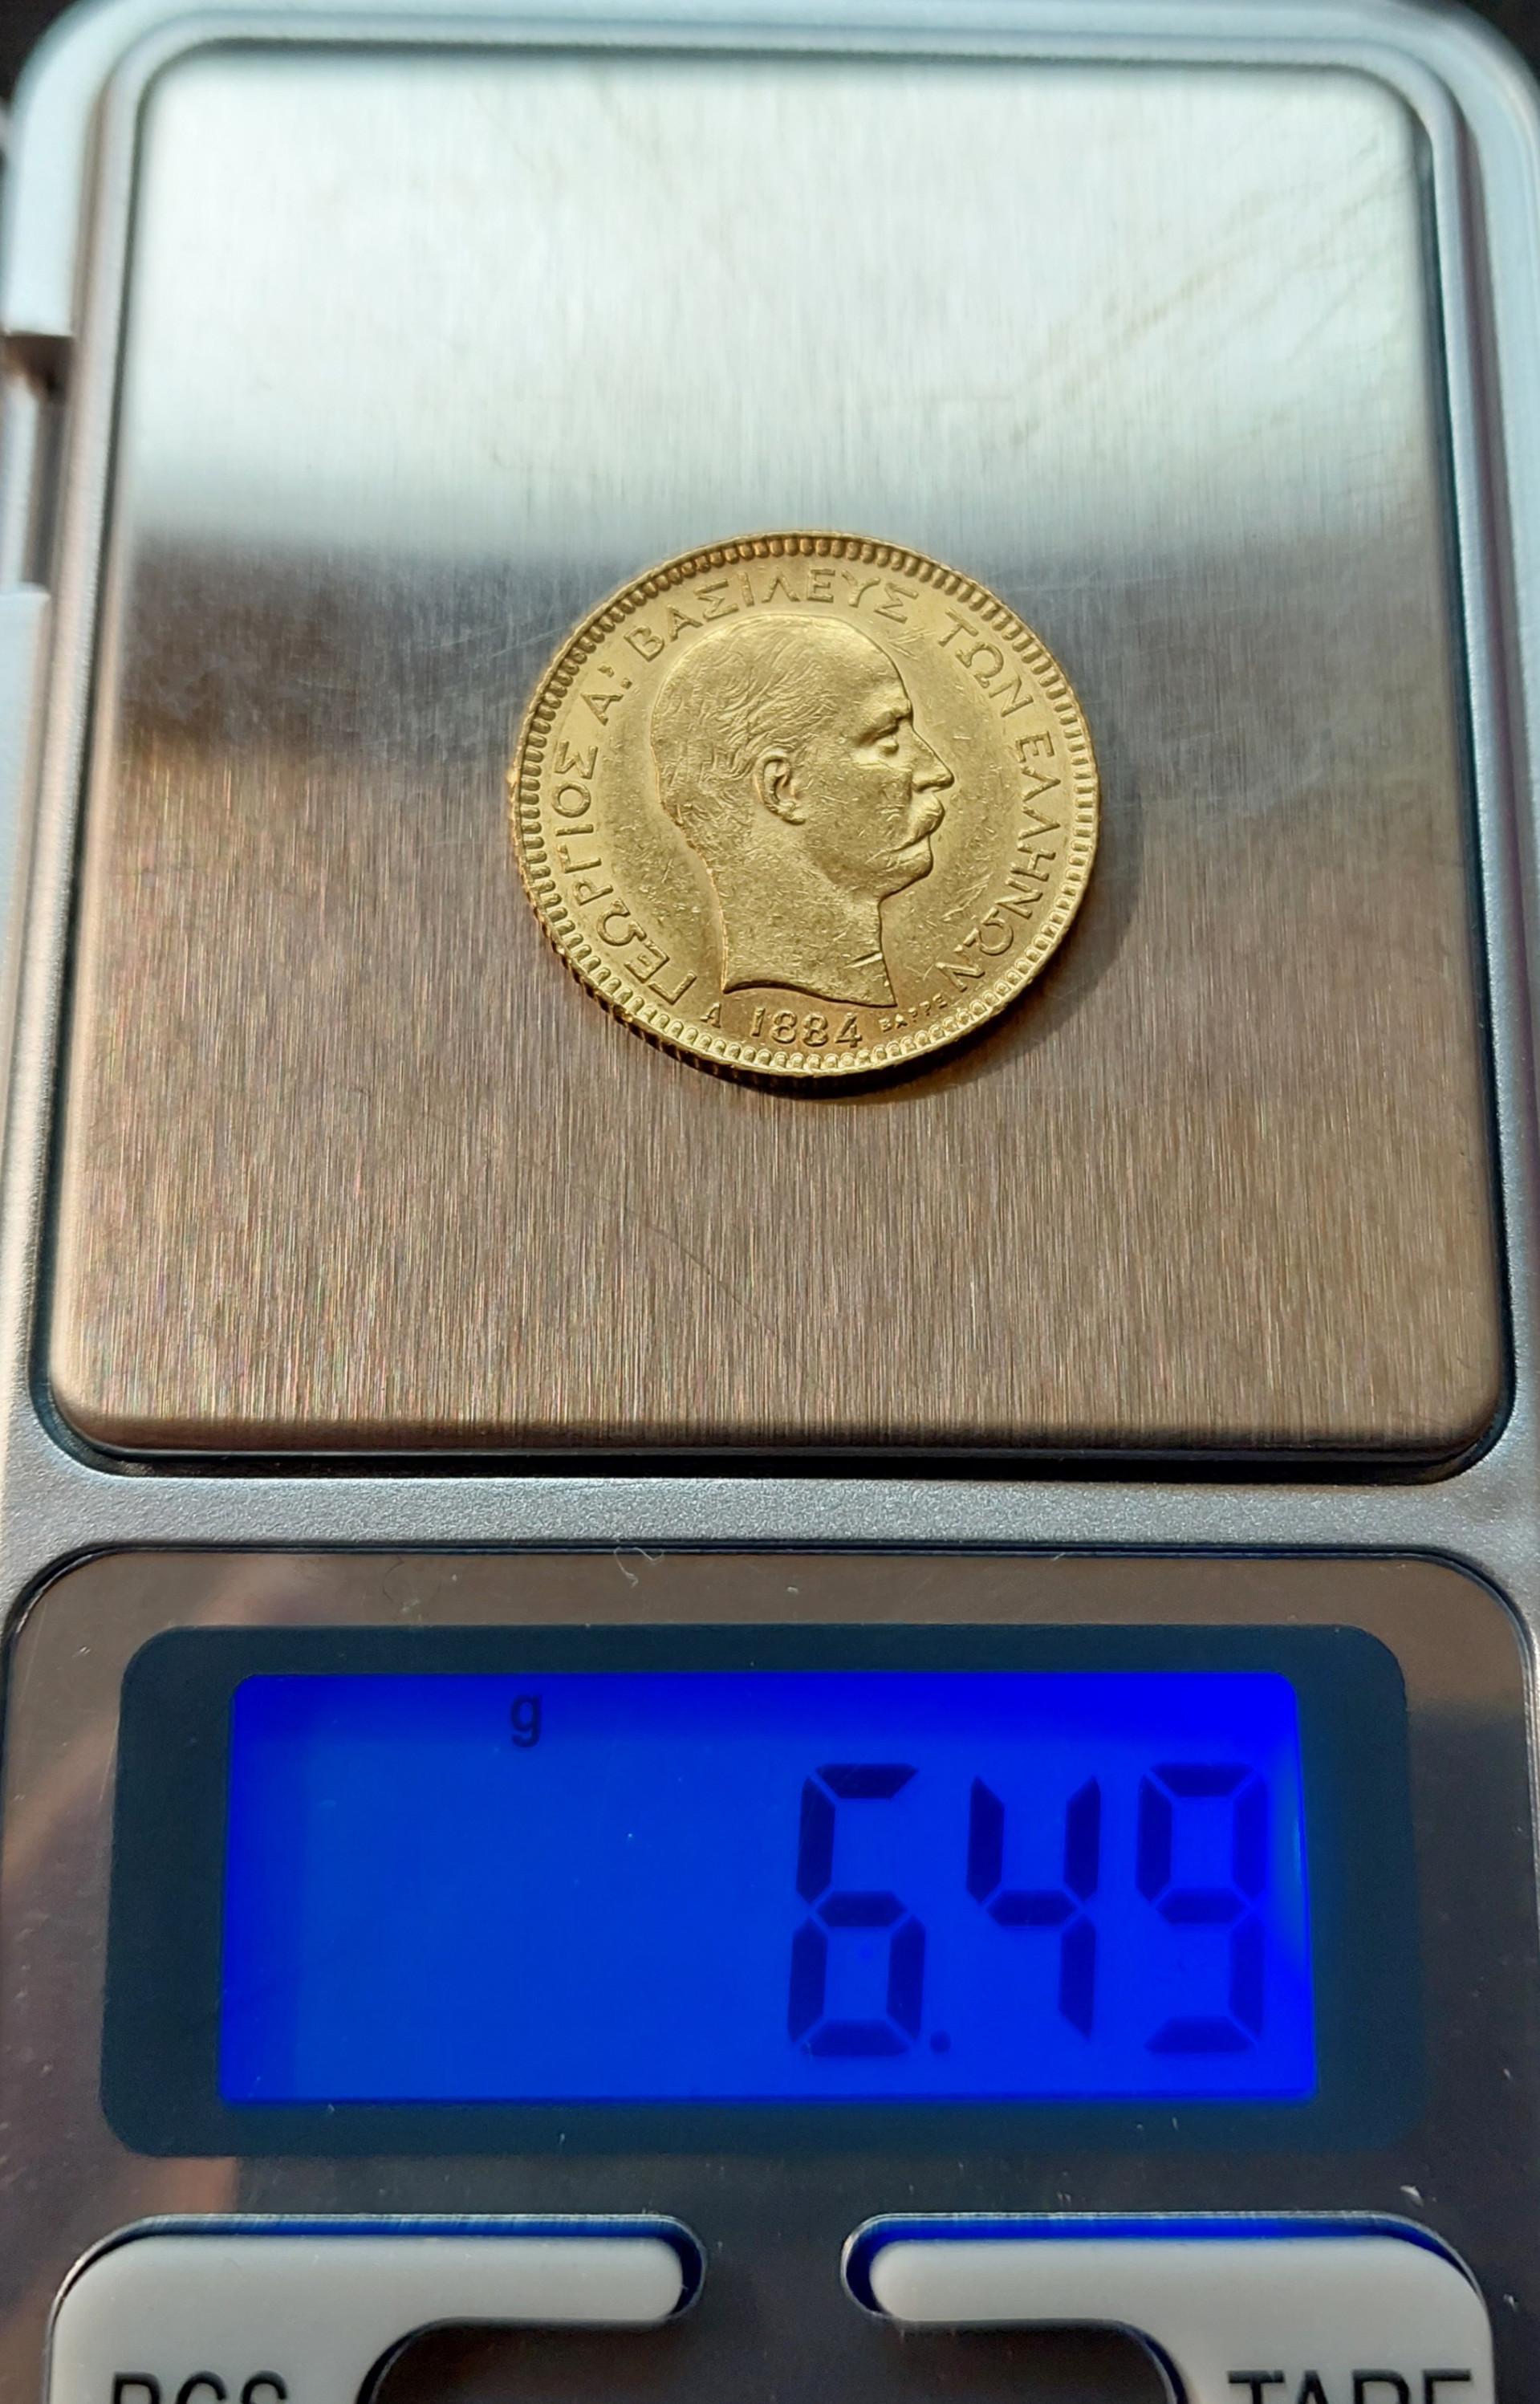 1884 20 Drahmų Auksinė moneta